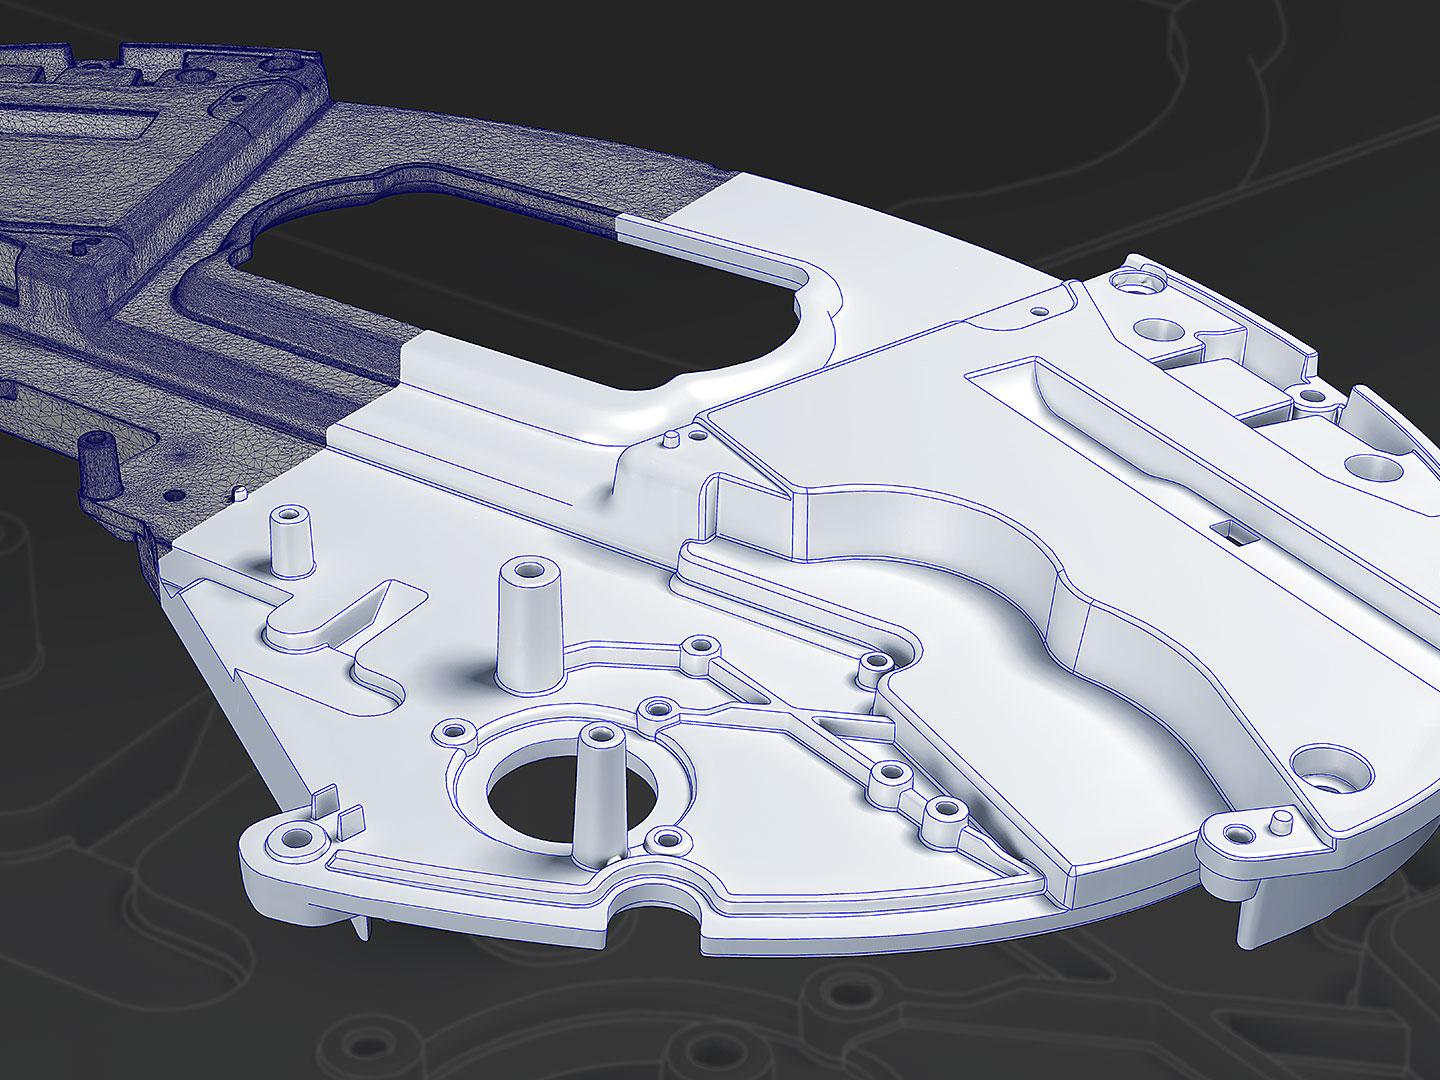 CAD-Modelle von Prototypen erstellen (Reverse Engineering)​